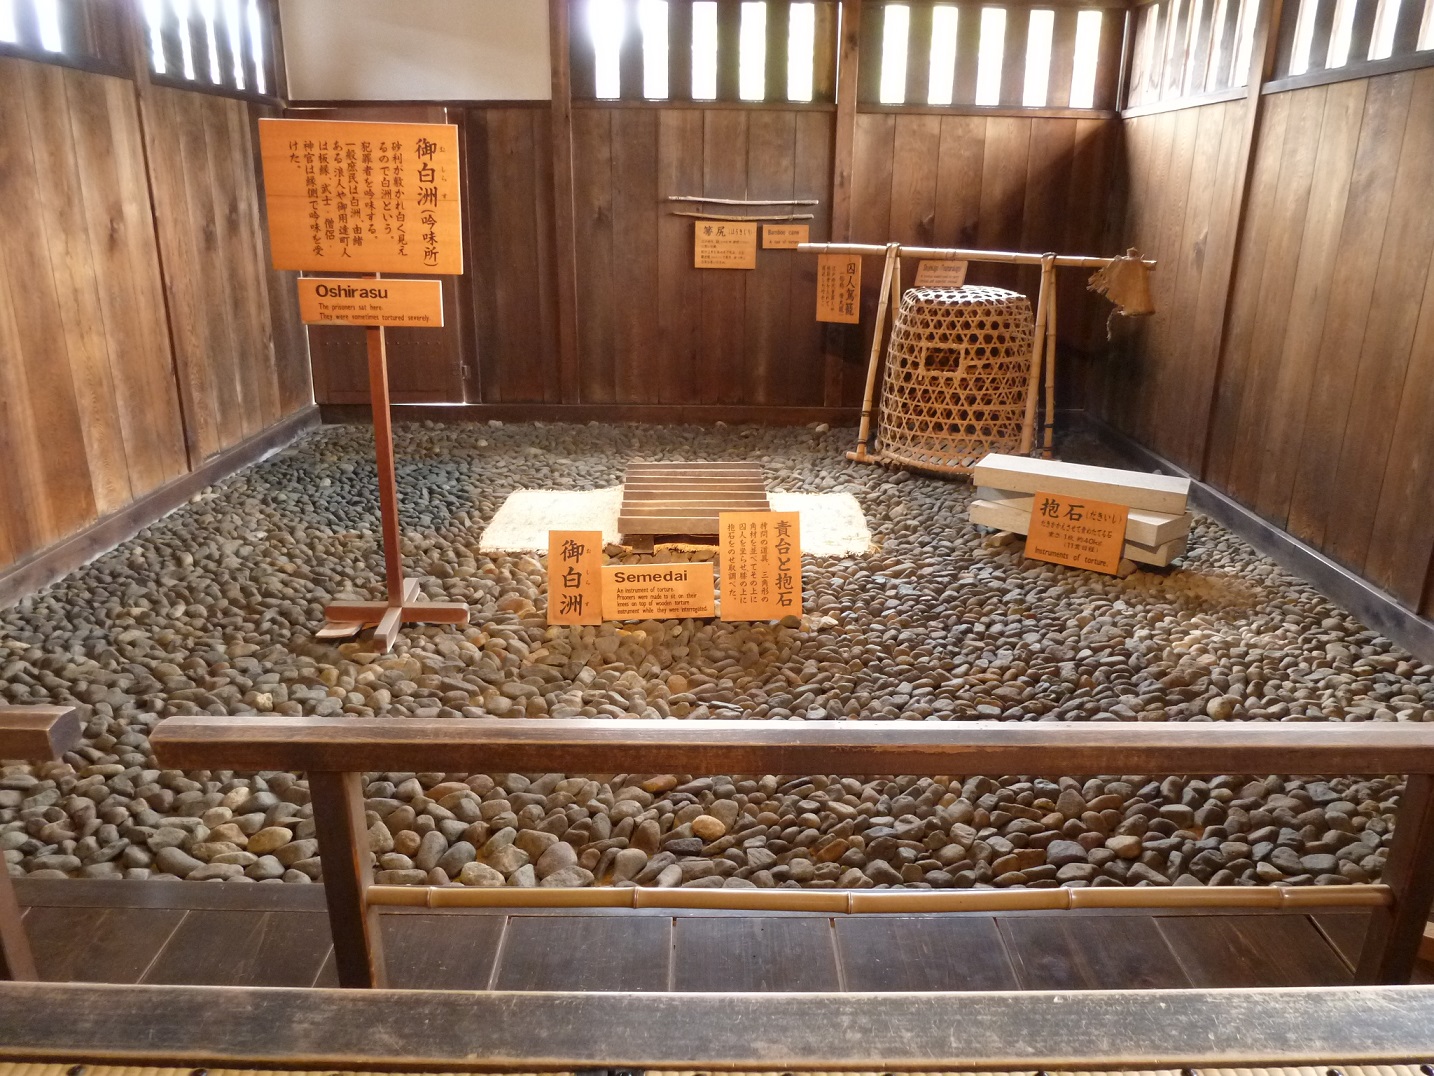 Strafgericht aus der Edozeit